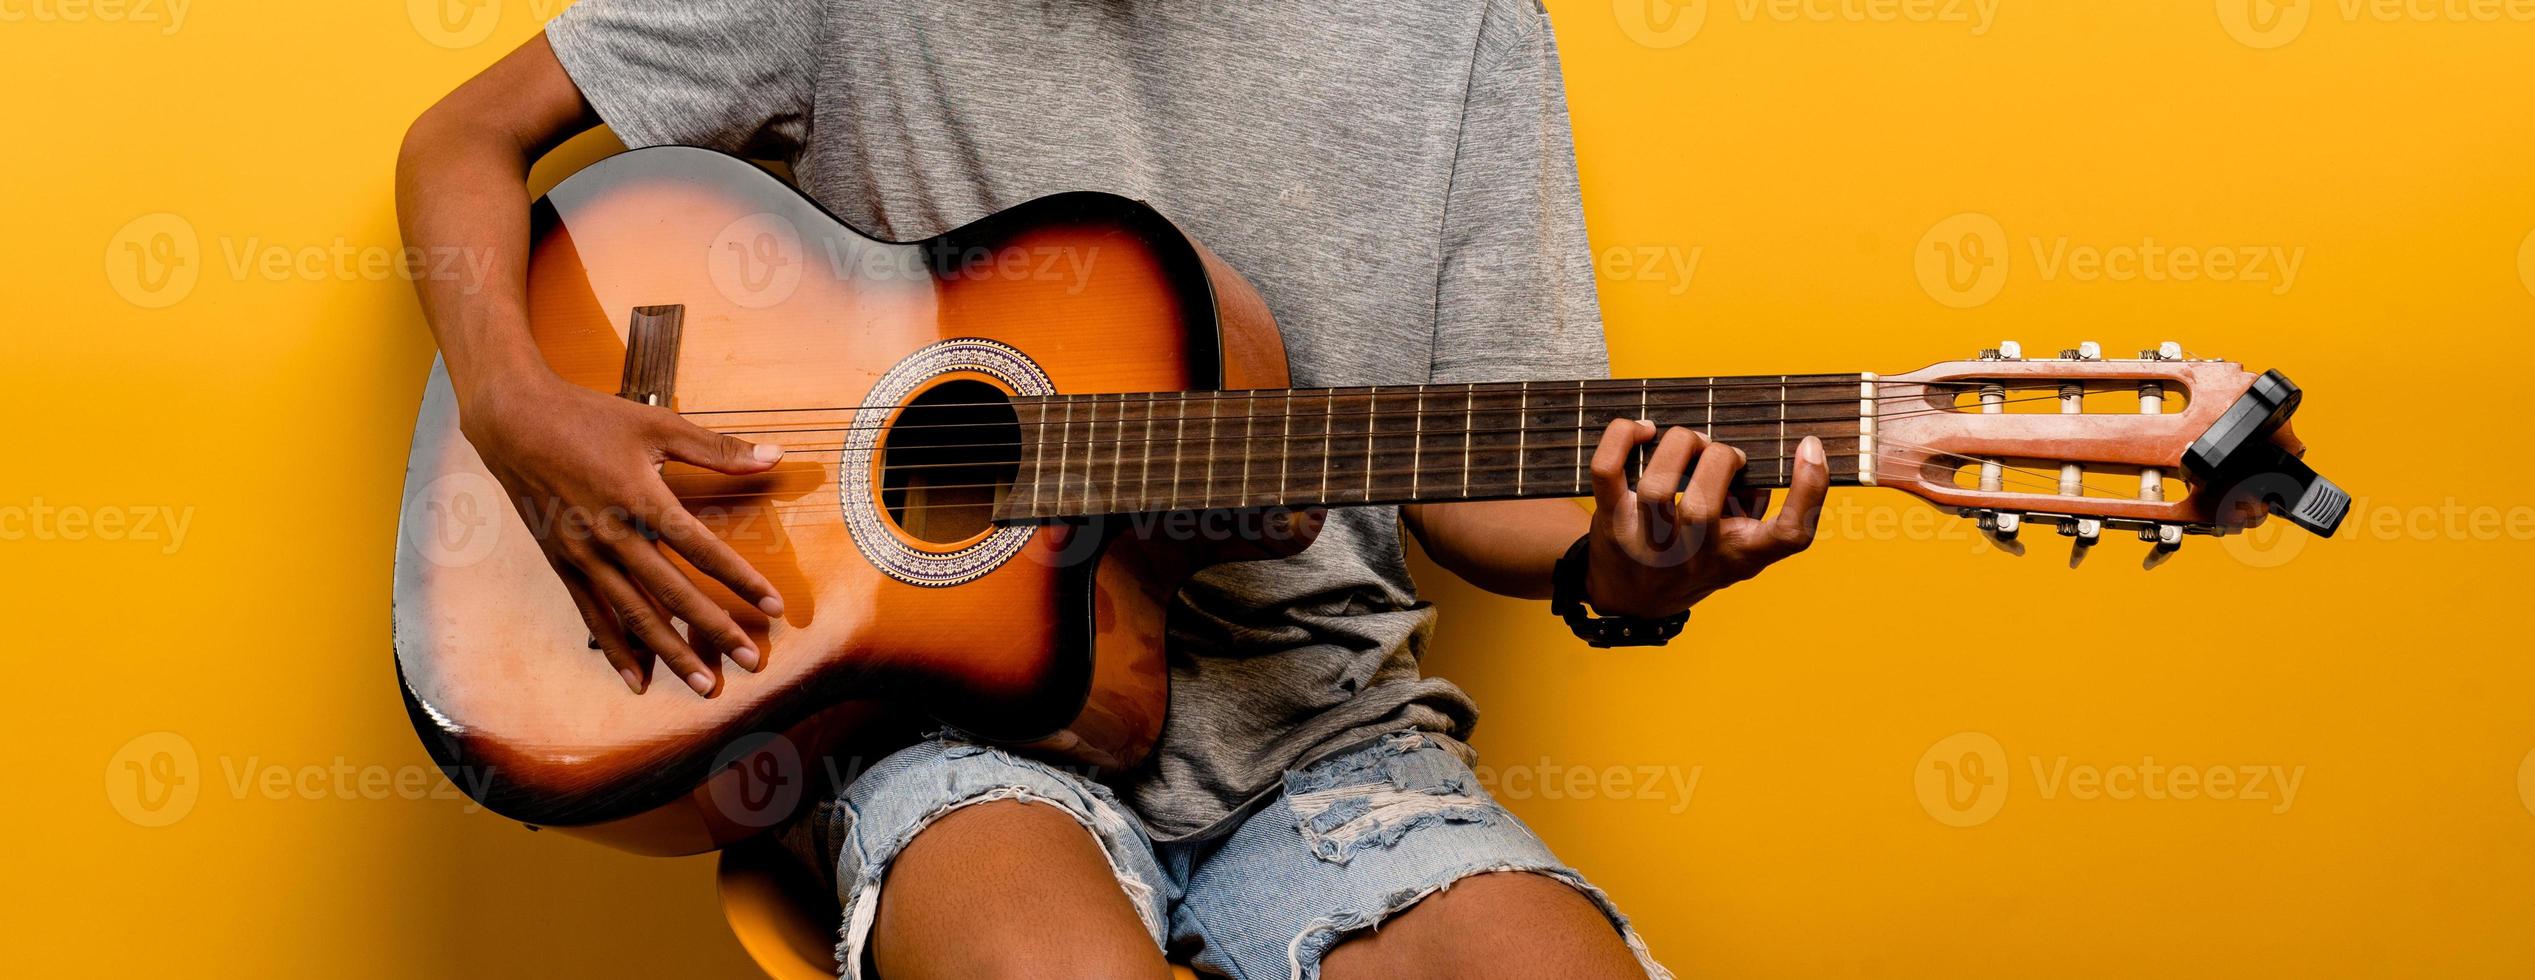 o guitarrista está afinando seu violão antes de tocar violão todas as vezes. foto